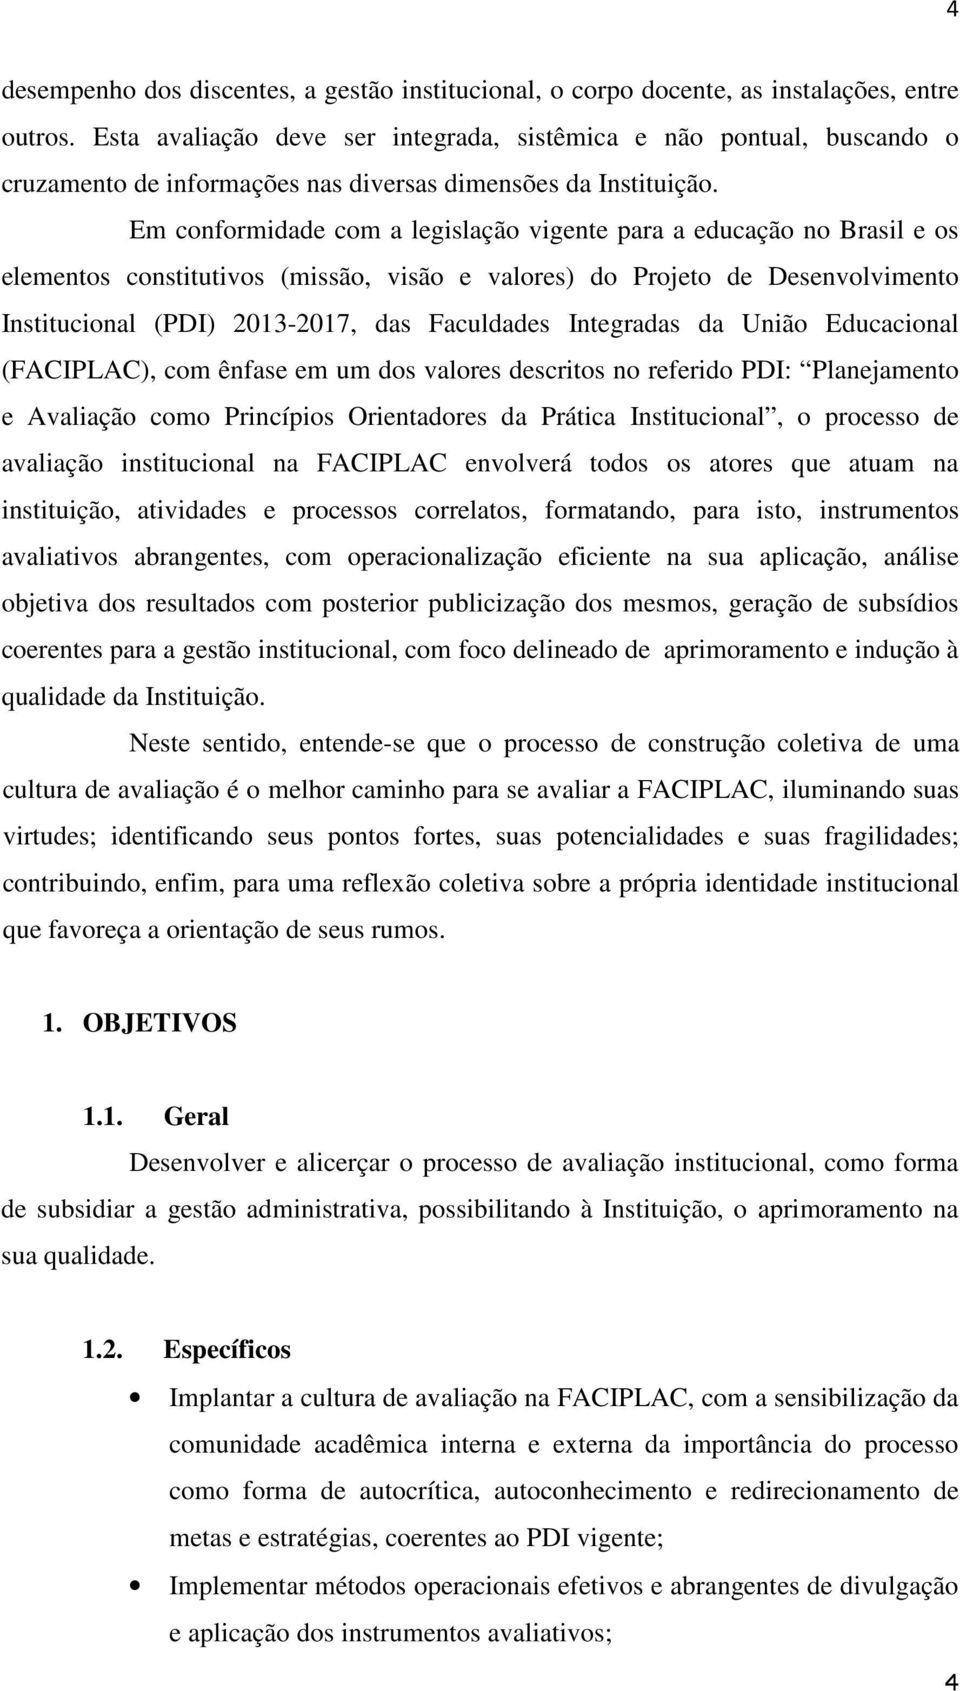 Em conformidade com a legislação vigente para a educação no Brasil e os elementos constitutivos (missão, visão e valores) do Projeto de Desenvolvimento Institucional (PDI) 2013-2017, das Faculdades